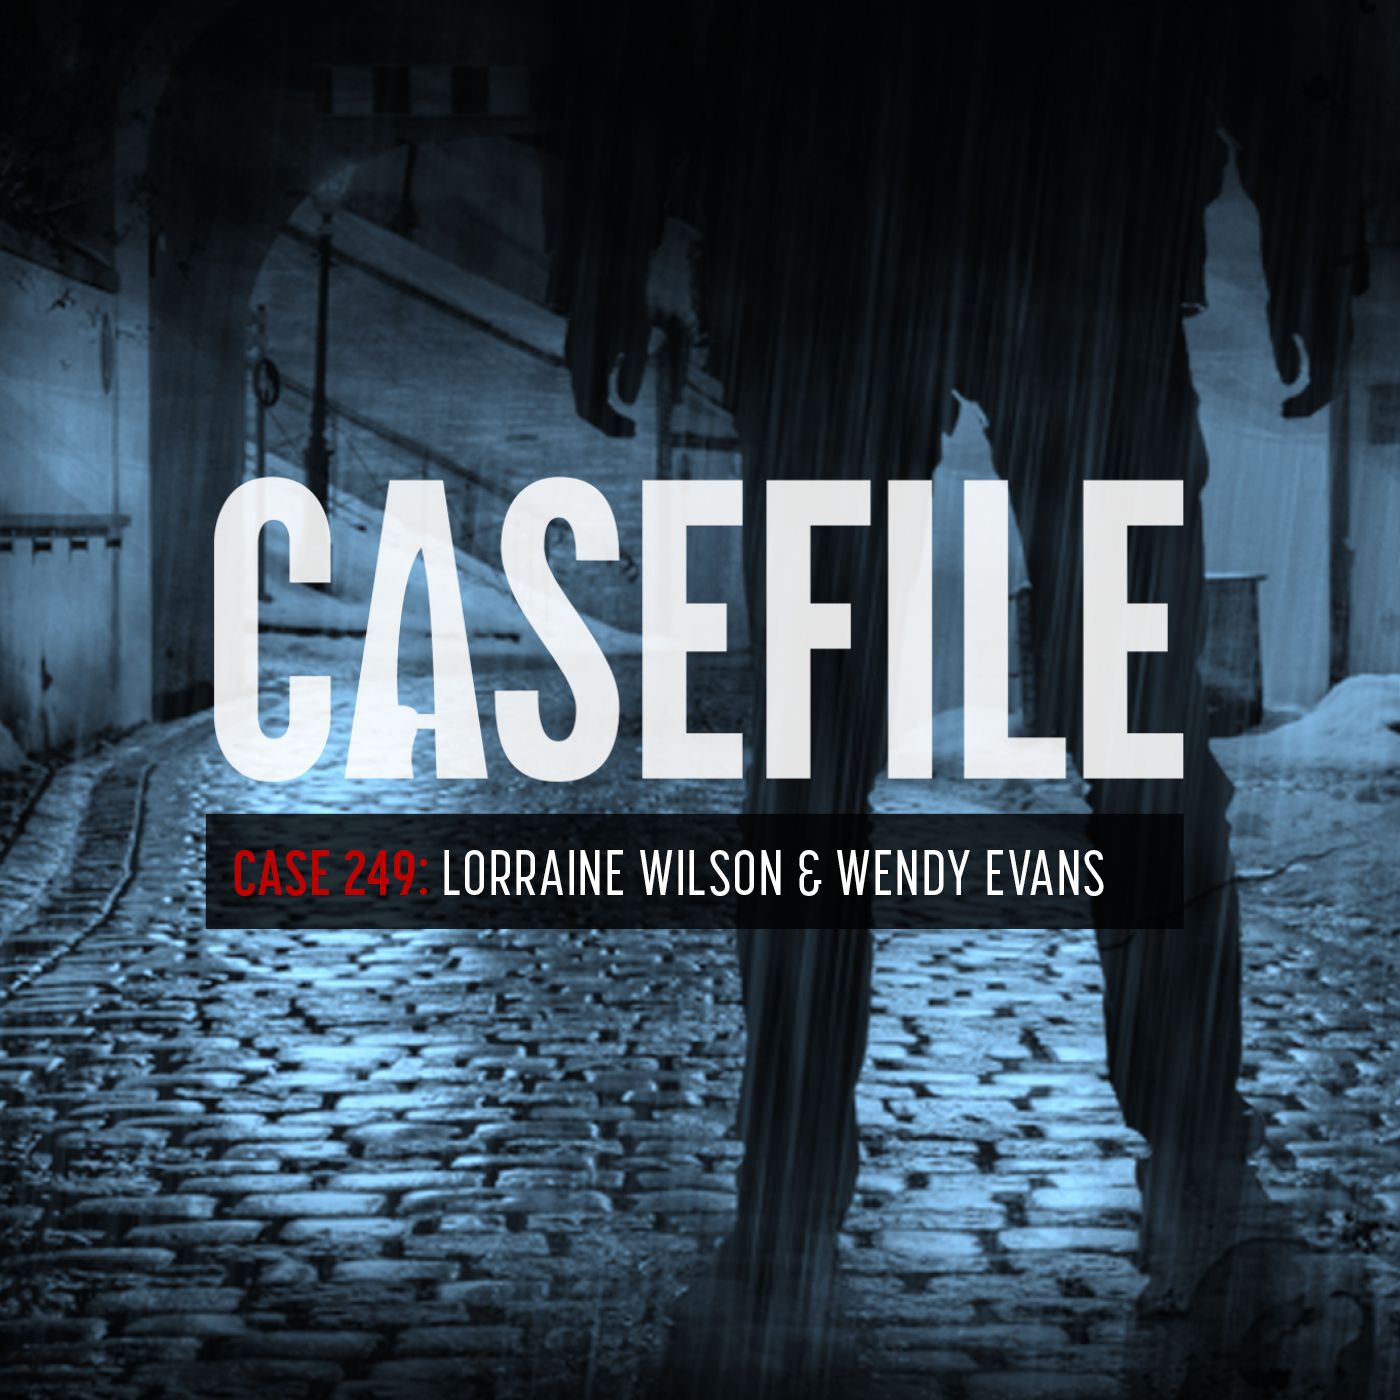 Case 249: Lorraine Wilson & Wendy Evans